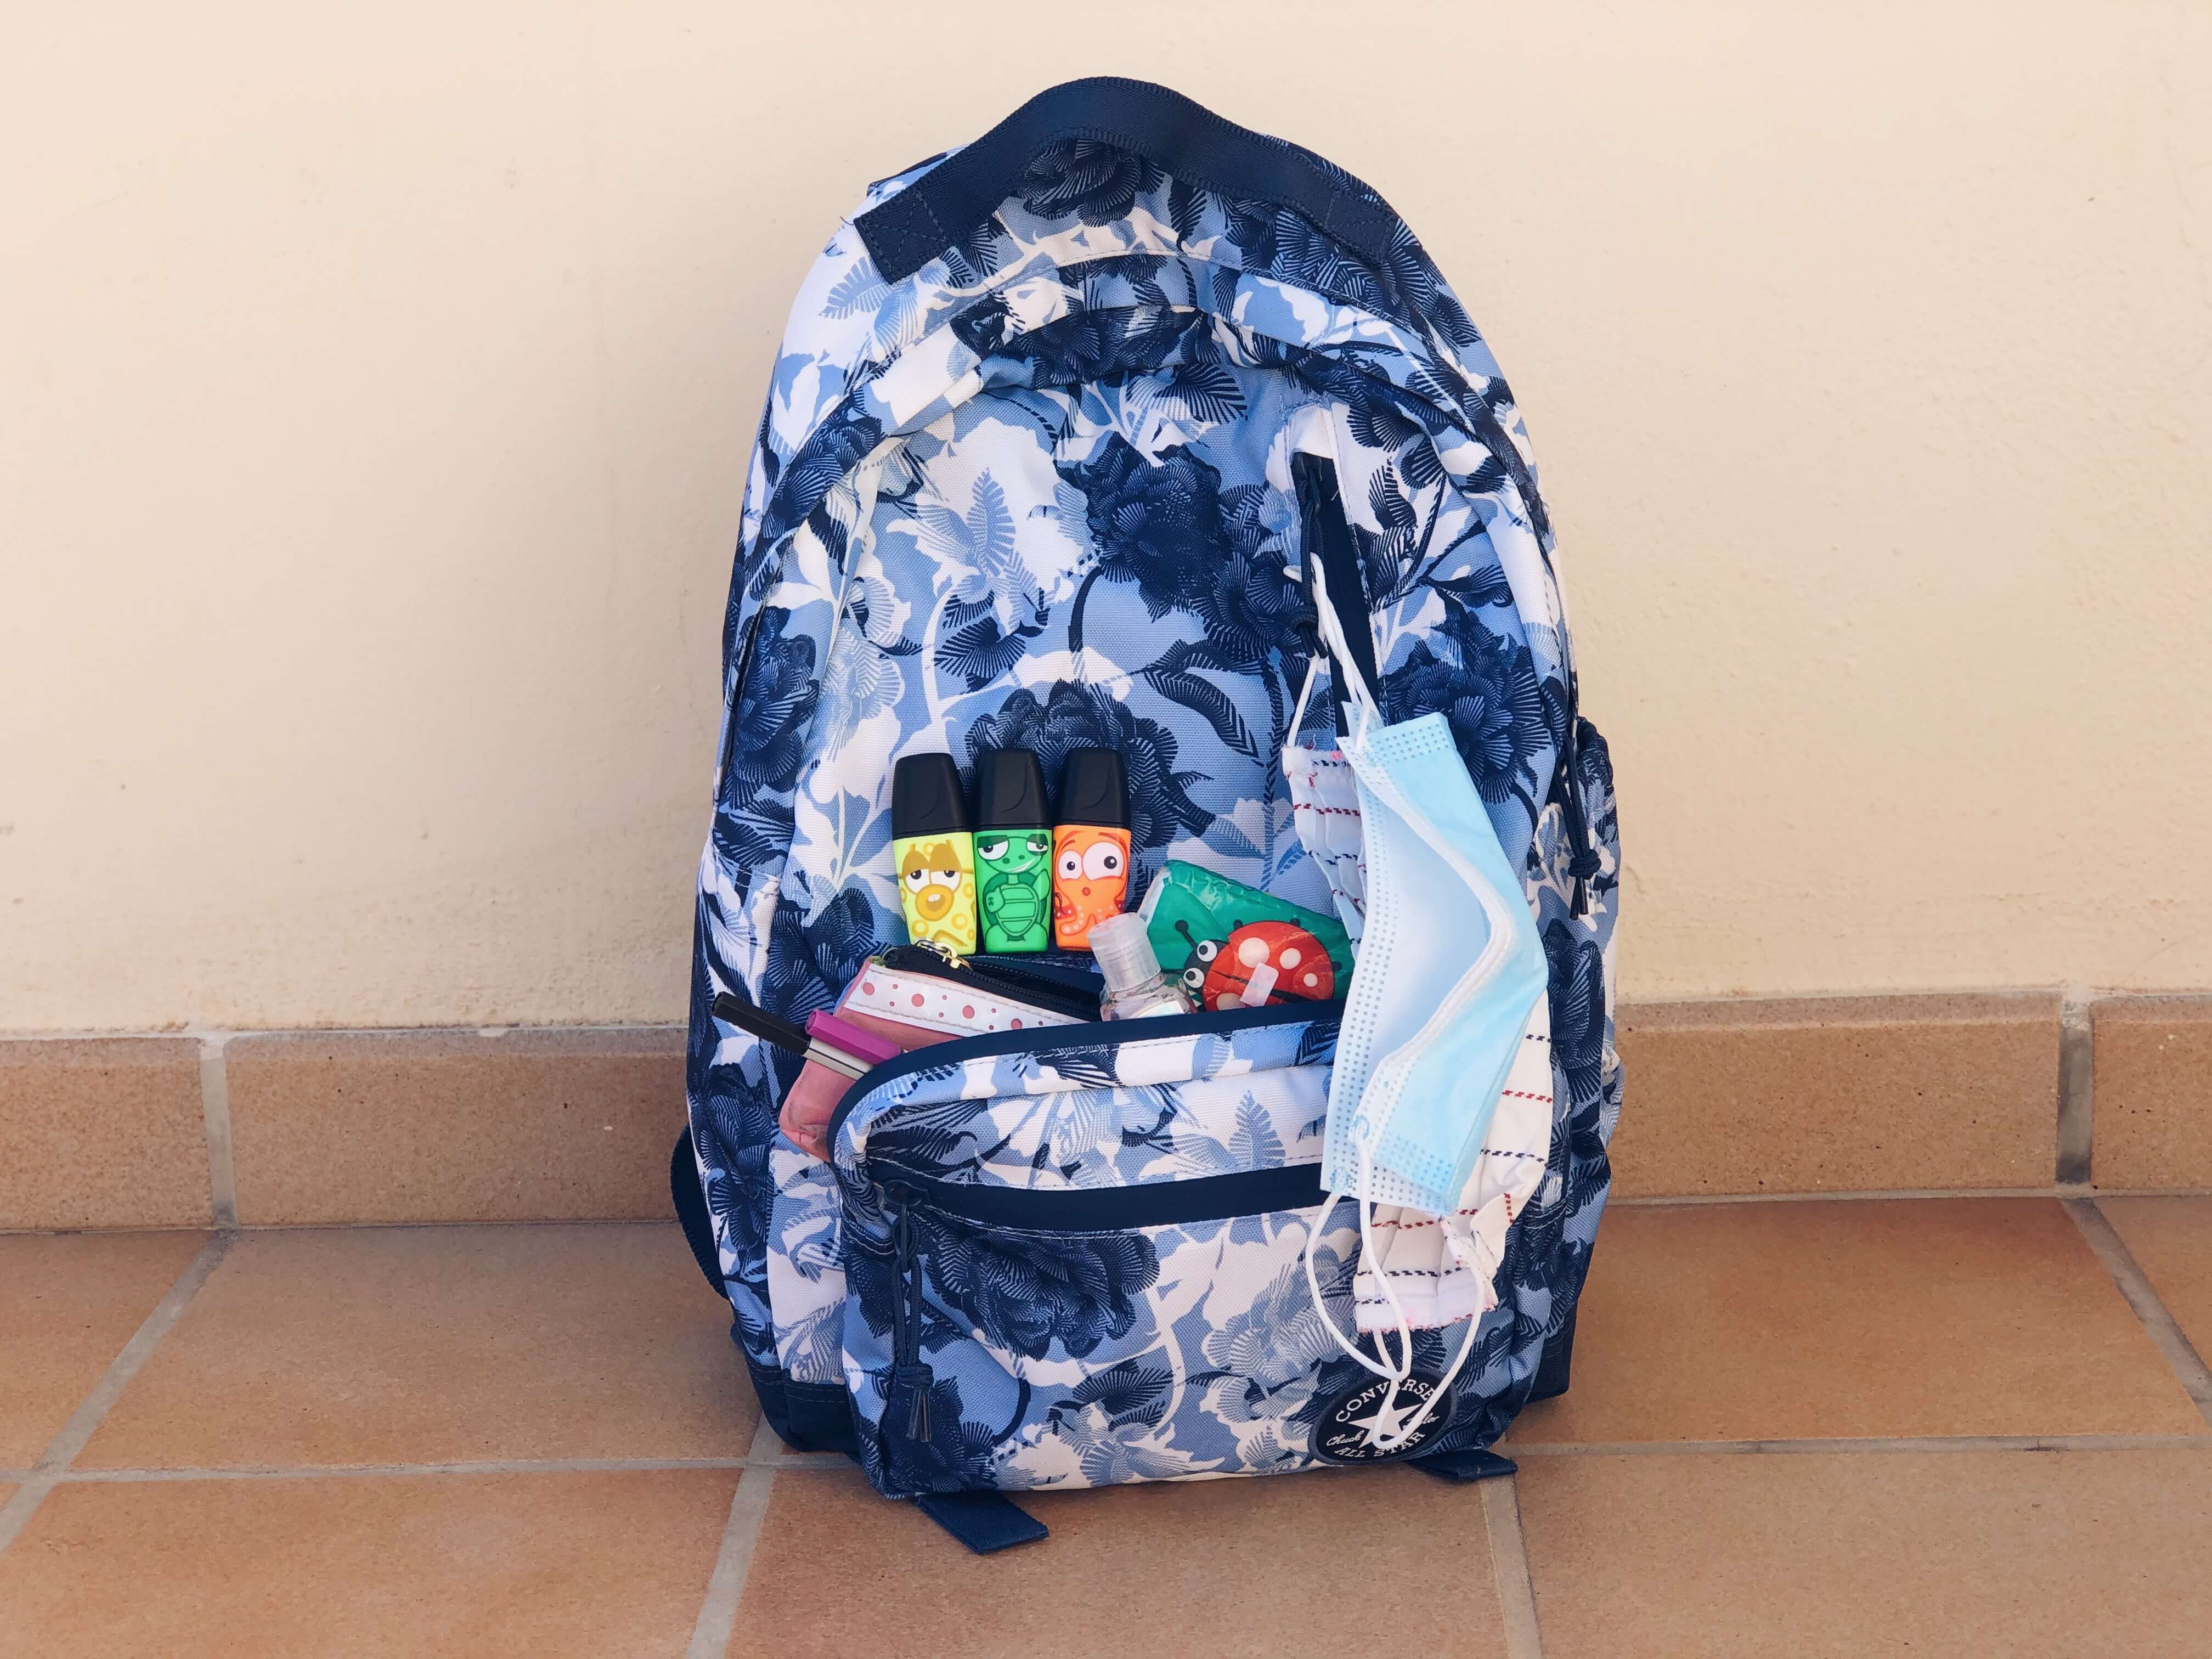 Textilné a jednorázové ochranné rúško zavesené na školskom batohu.